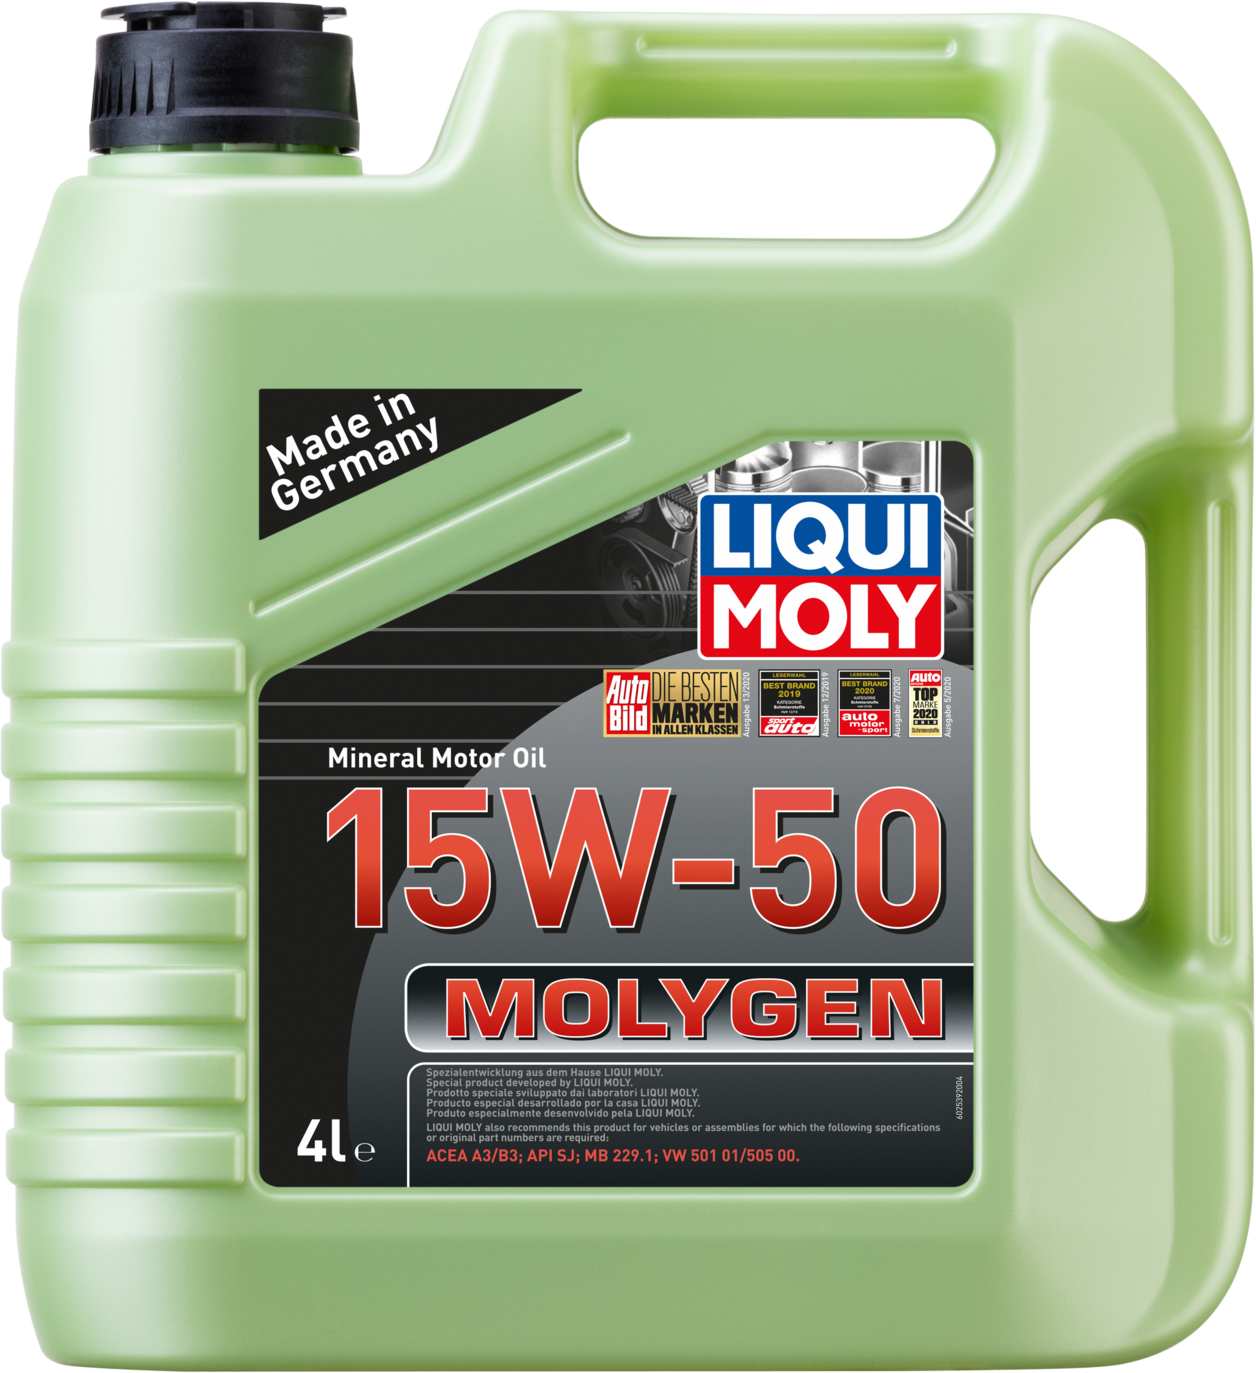 Liqui Moly Molygen 15W-50, 4 x 4 lt detail 2